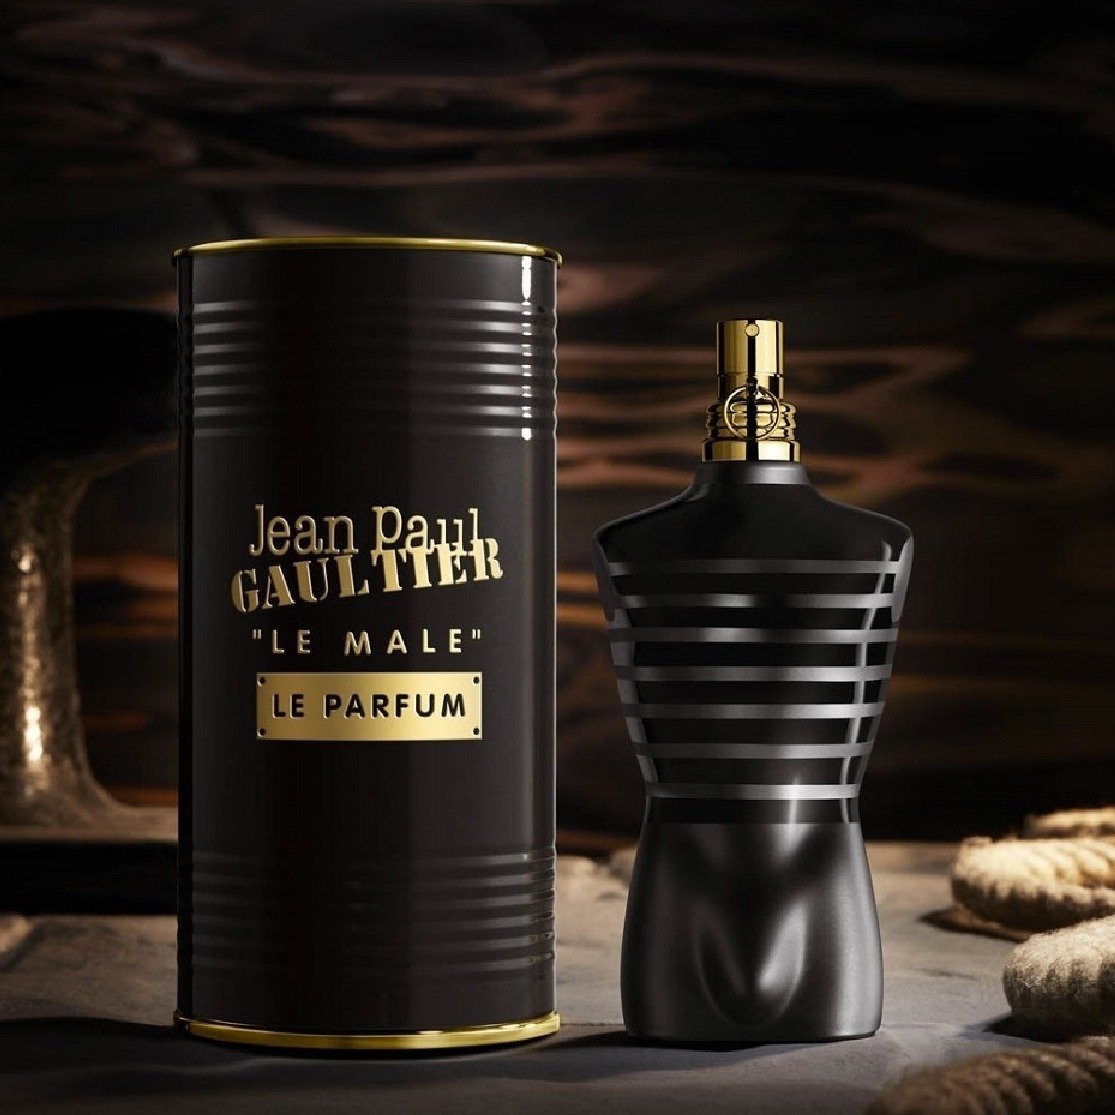 Le Male Le Parfum Jean Paul Gaultier EDP 125ml- Mascul